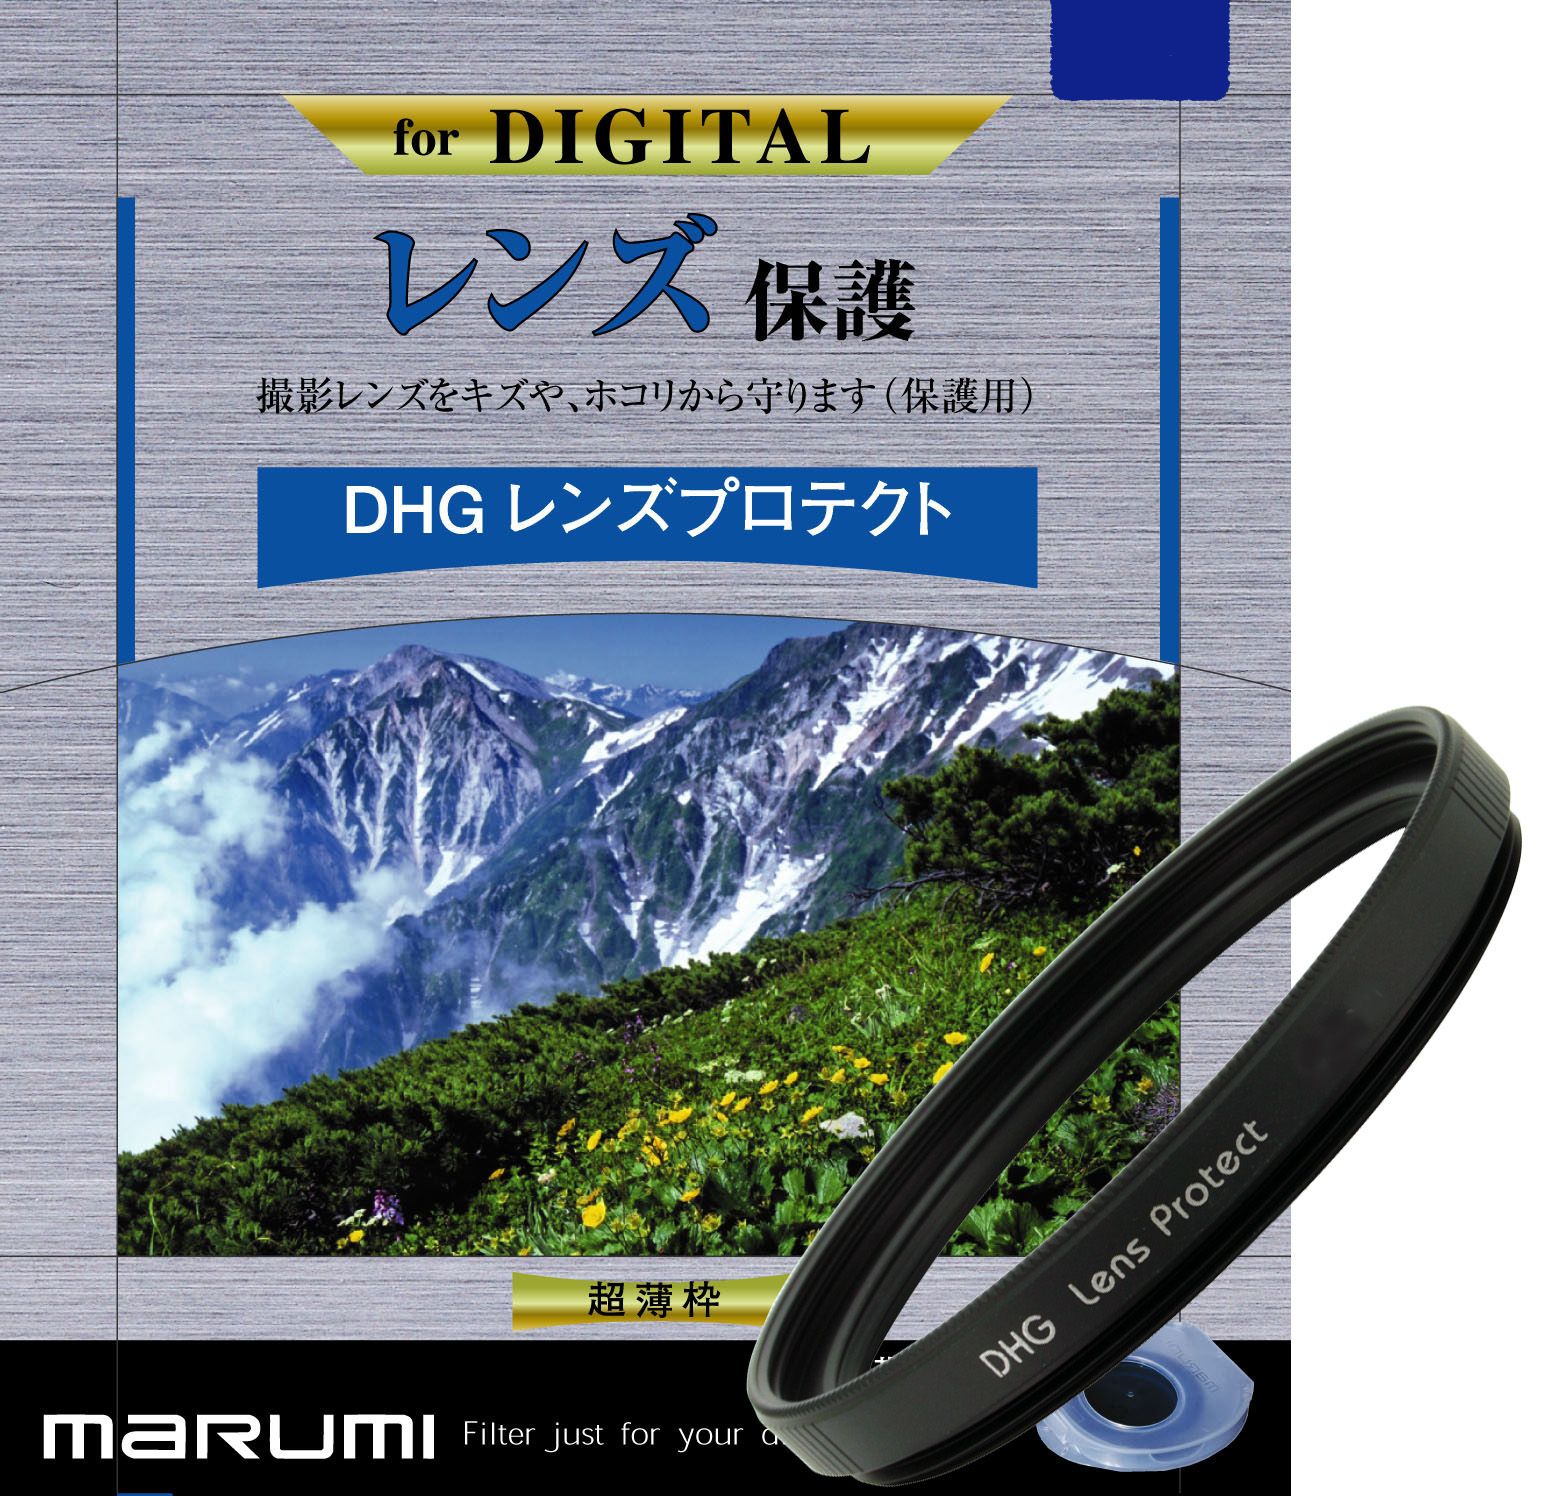 マルミ  DHG レンズプロテクト 72mm [プロテクター] MARUMI